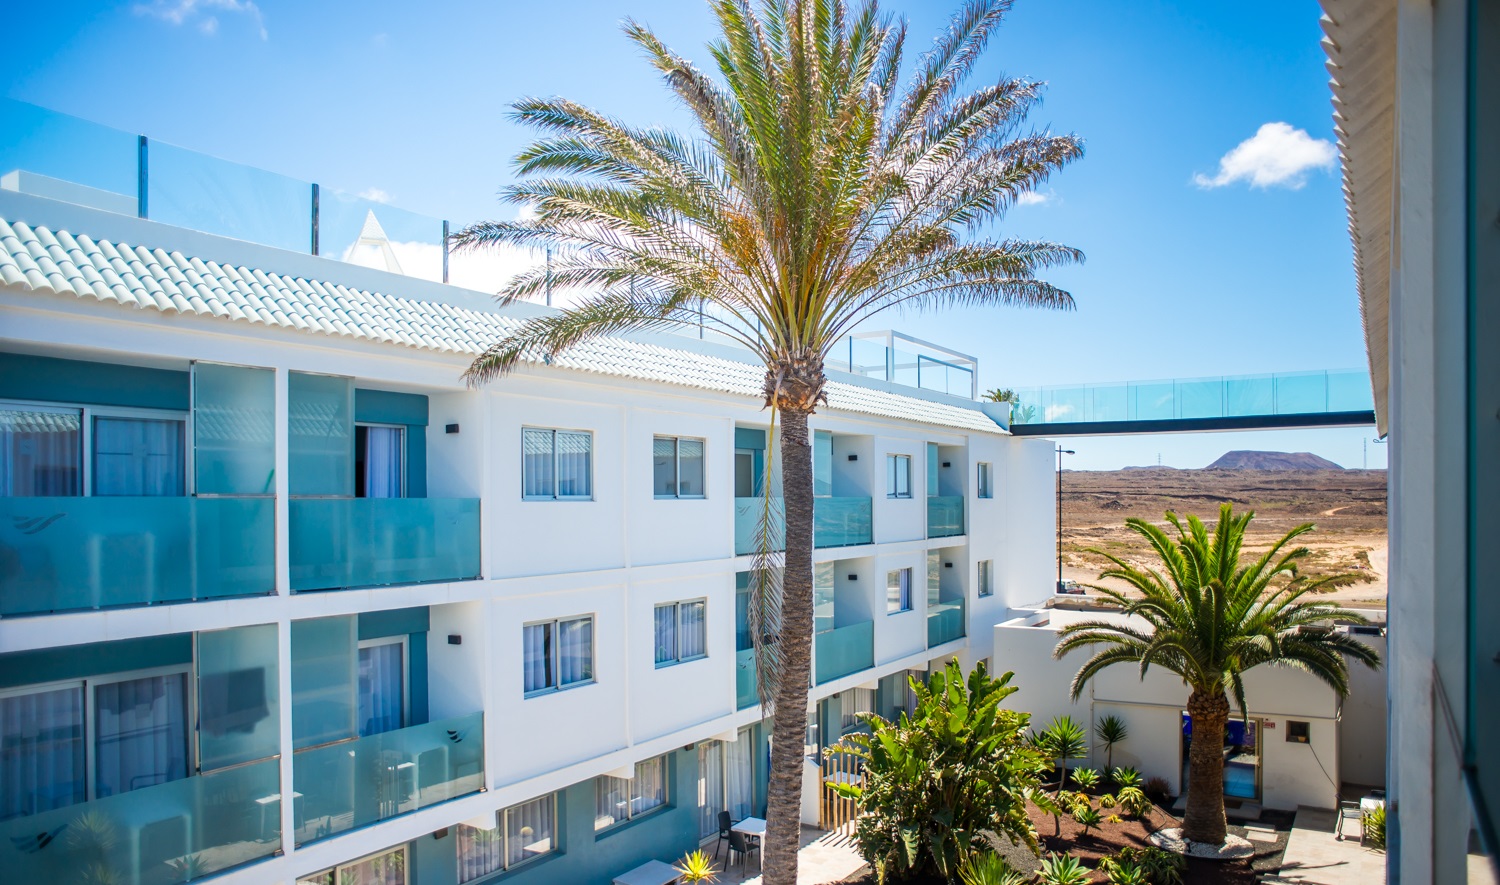 Consejos al buscar vivienda en Fuerteventura